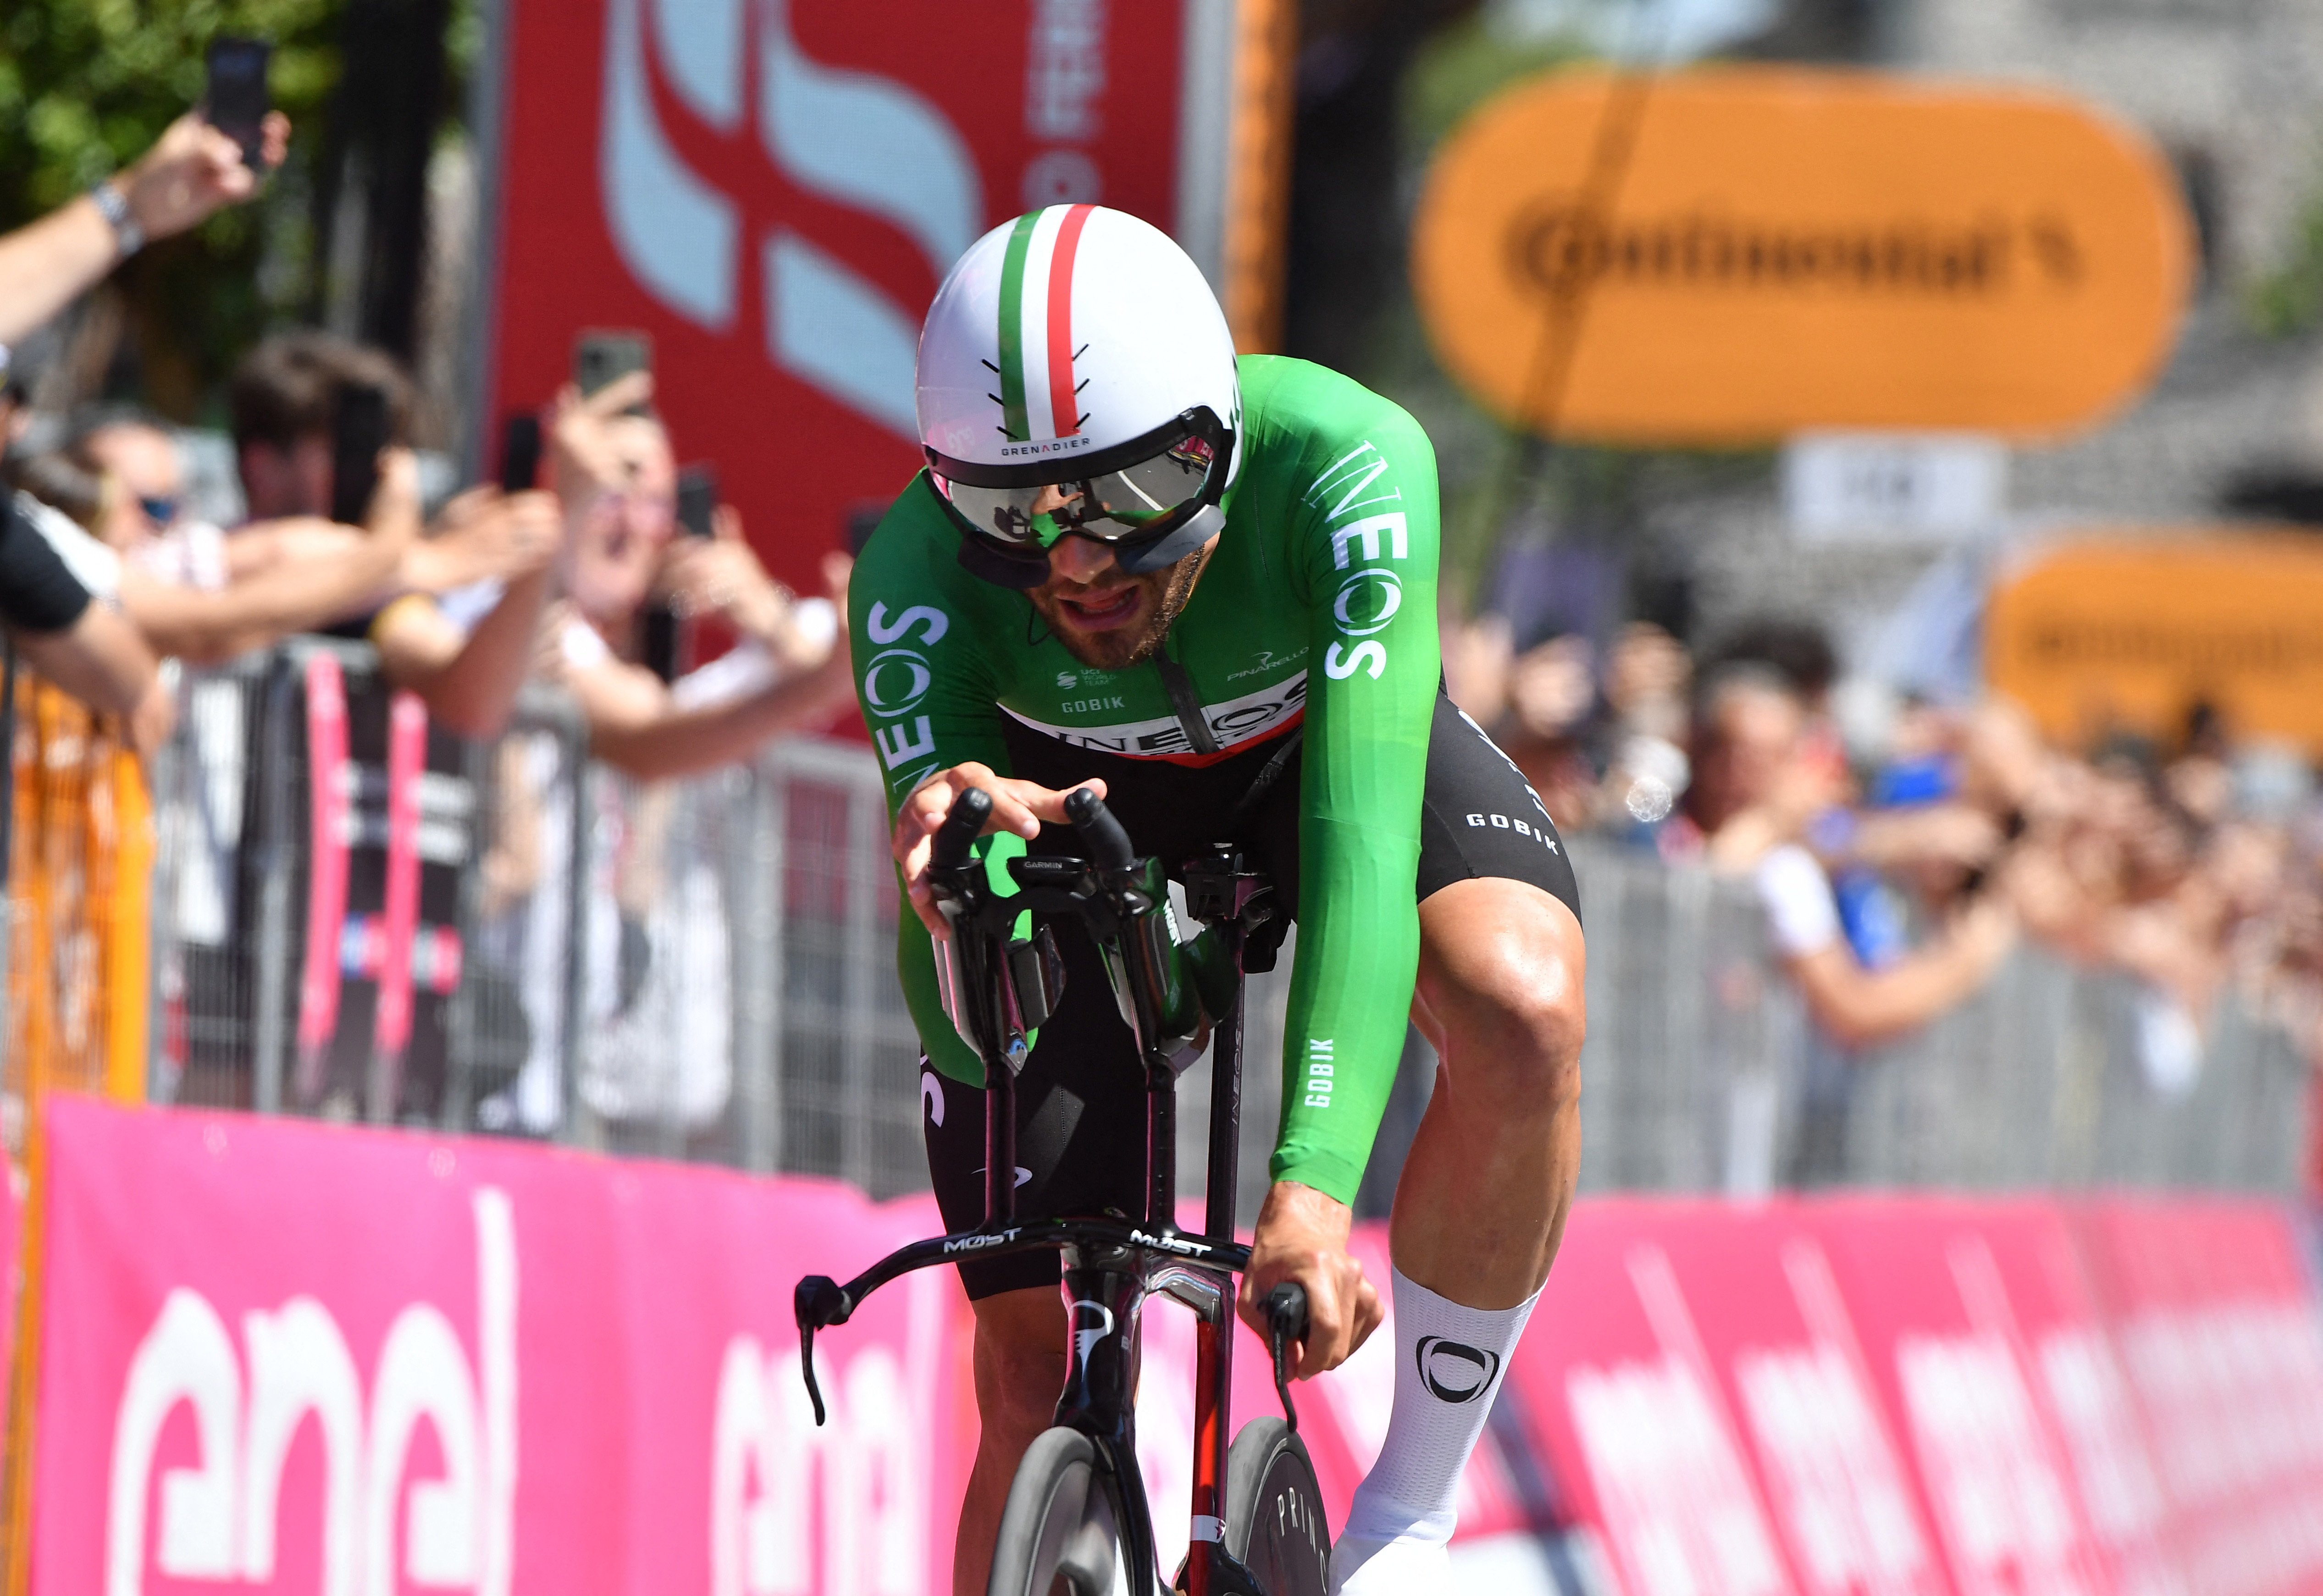 Giro d'Italia - Stage 14 - Castiglione delle Stiviere to Desenzano del Garda